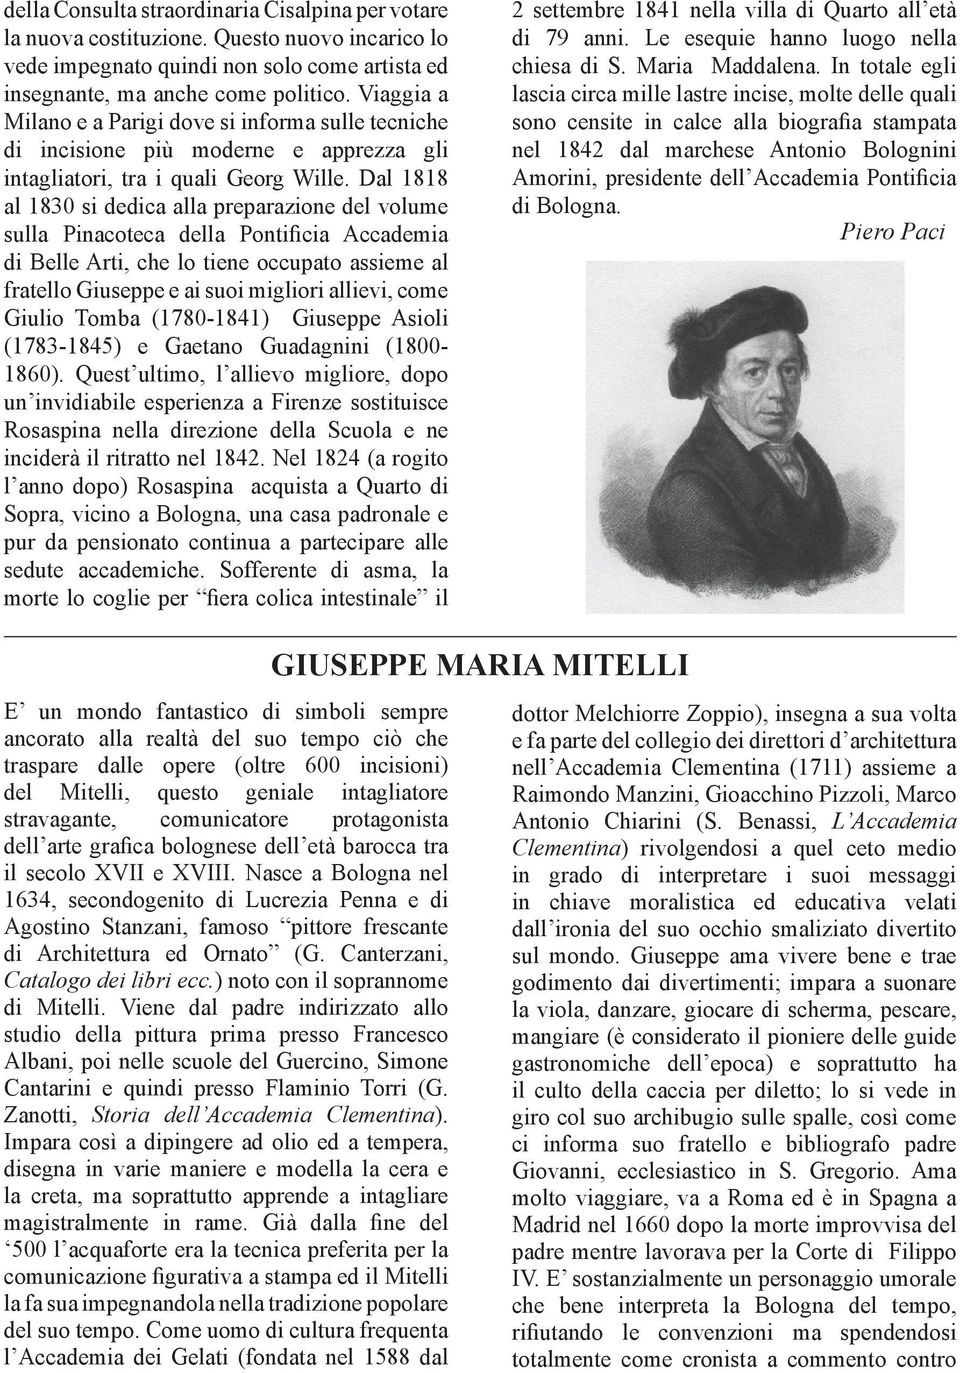 Dal 1818 al 1830 si dedica alla preparazione del volume sulla Pinacoteca della Pontificia Accademia di Belle Arti, che lo tiene occupato assieme al fratello Giuseppe e ai suoi migliori allievi, come